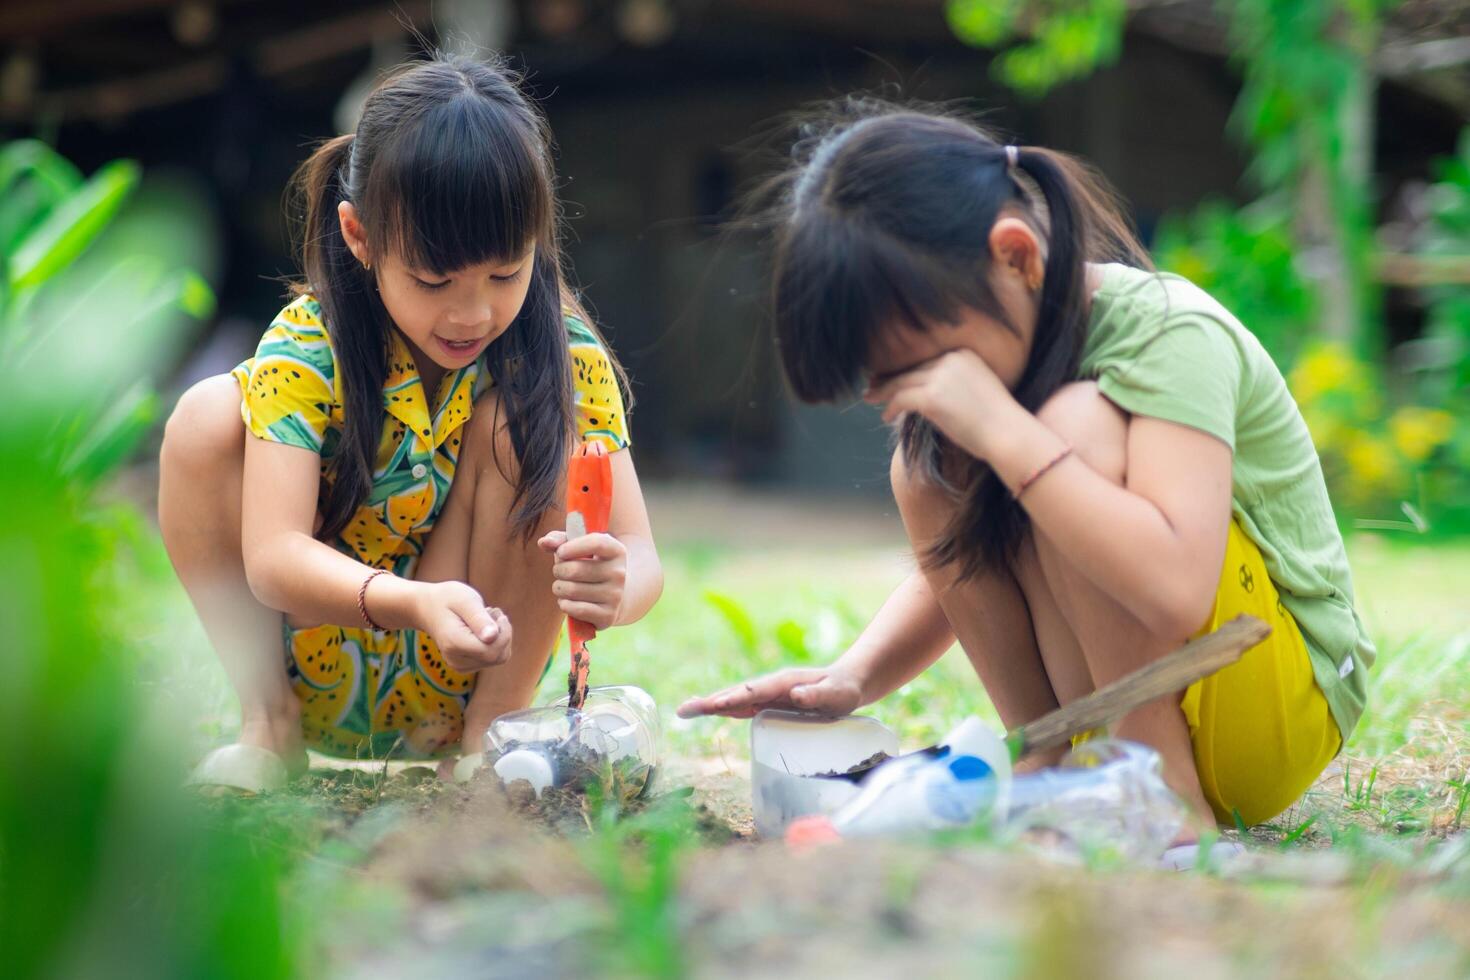 weinig meisje aanplant planten in potten van gerecycled water flessen in de achtertuin. recycle water fles pot, tuinieren activiteiten voor kinderen. recycling van plastic verspilling foto